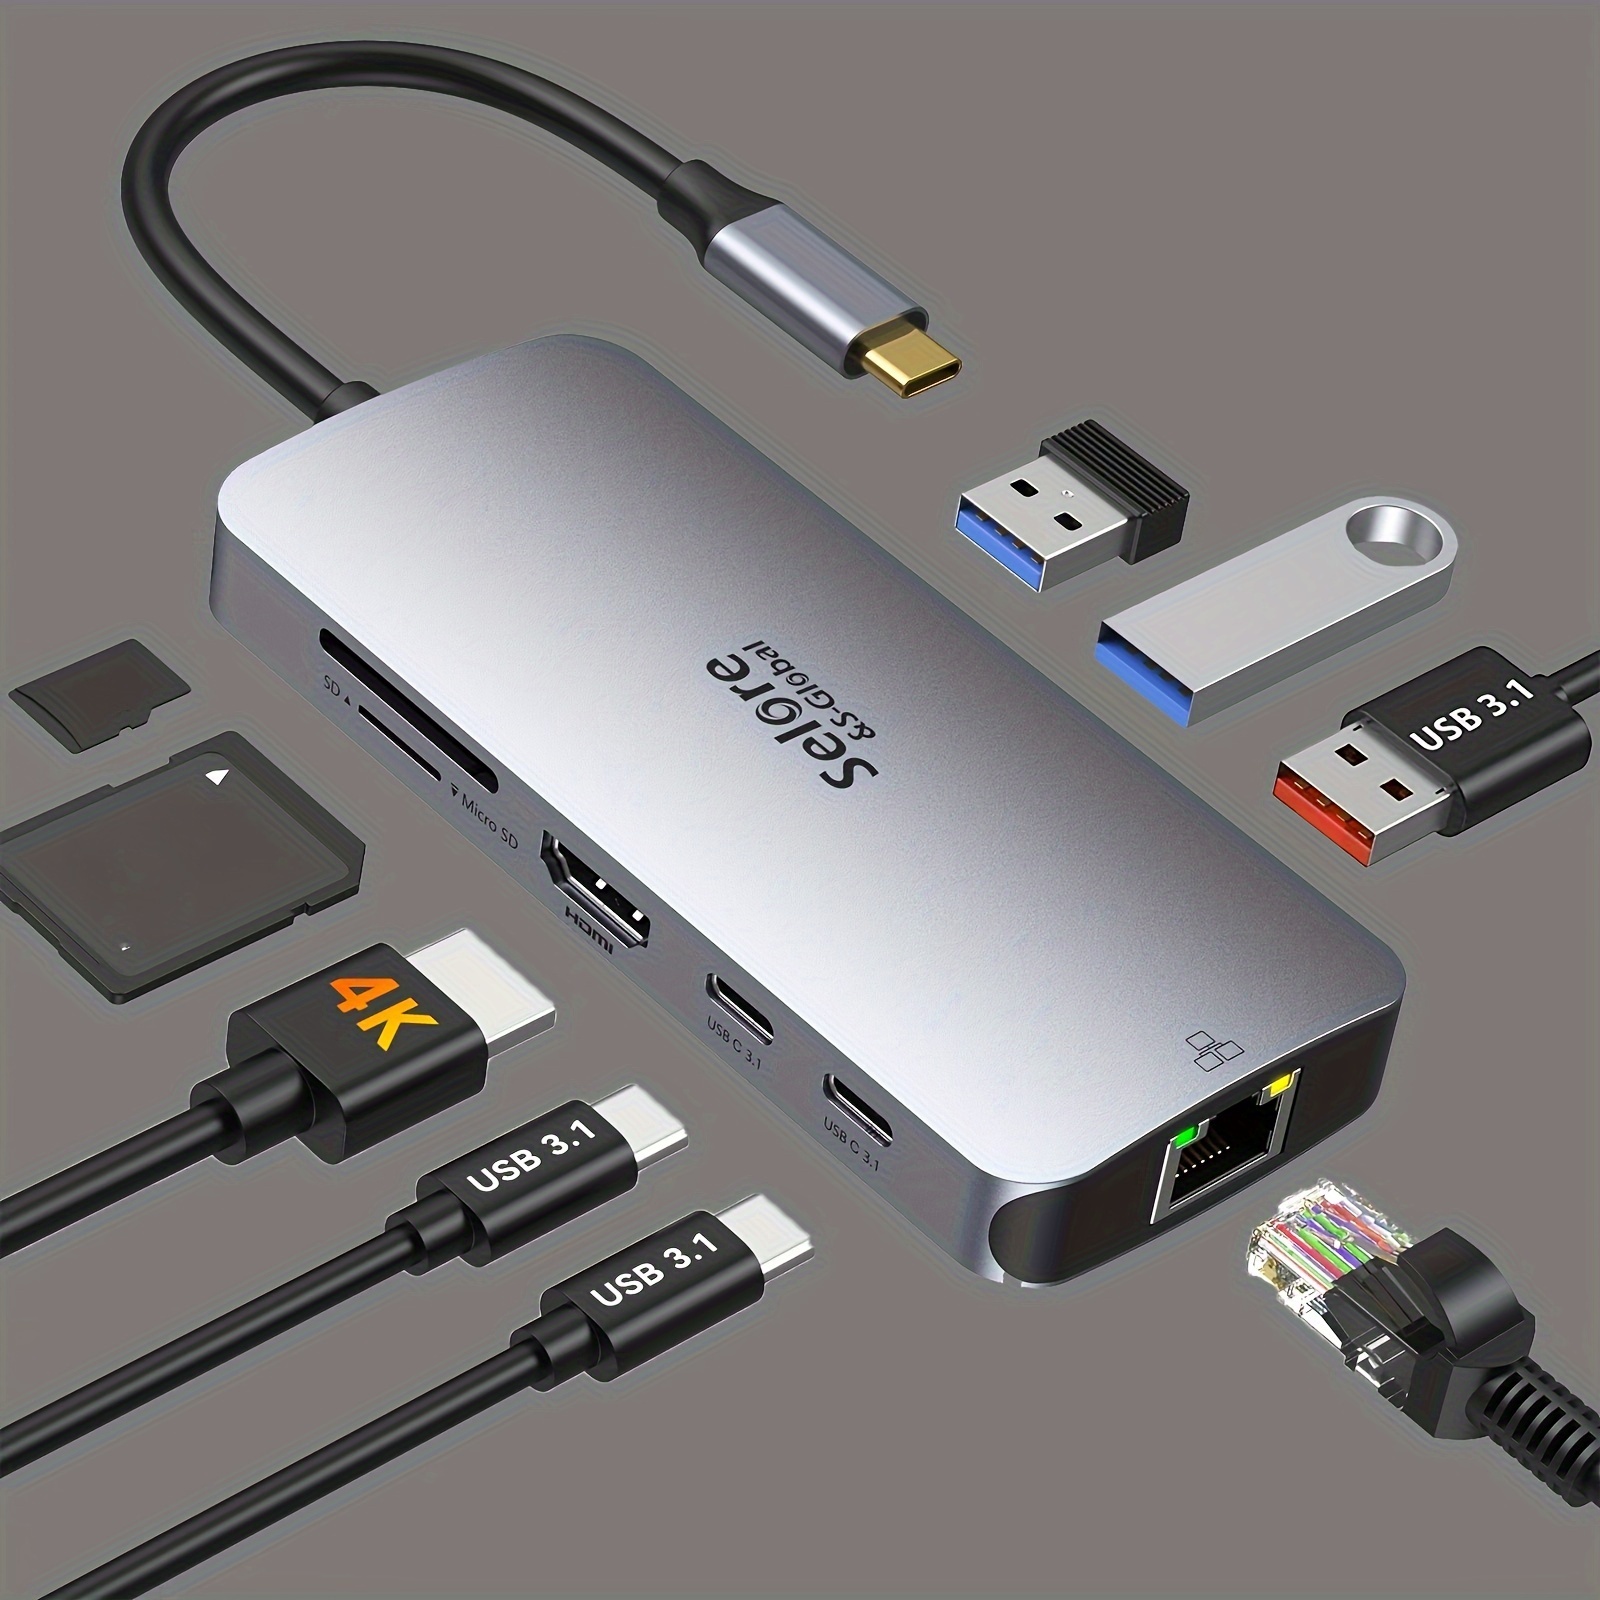 Adaptador MacBook Pro, adaptador USB C para MacBook Pro/Air M1M2 2022 2021  2020 13 15 16, dongle Mac con HDMI 4K, 3 USB 3.0, USB C